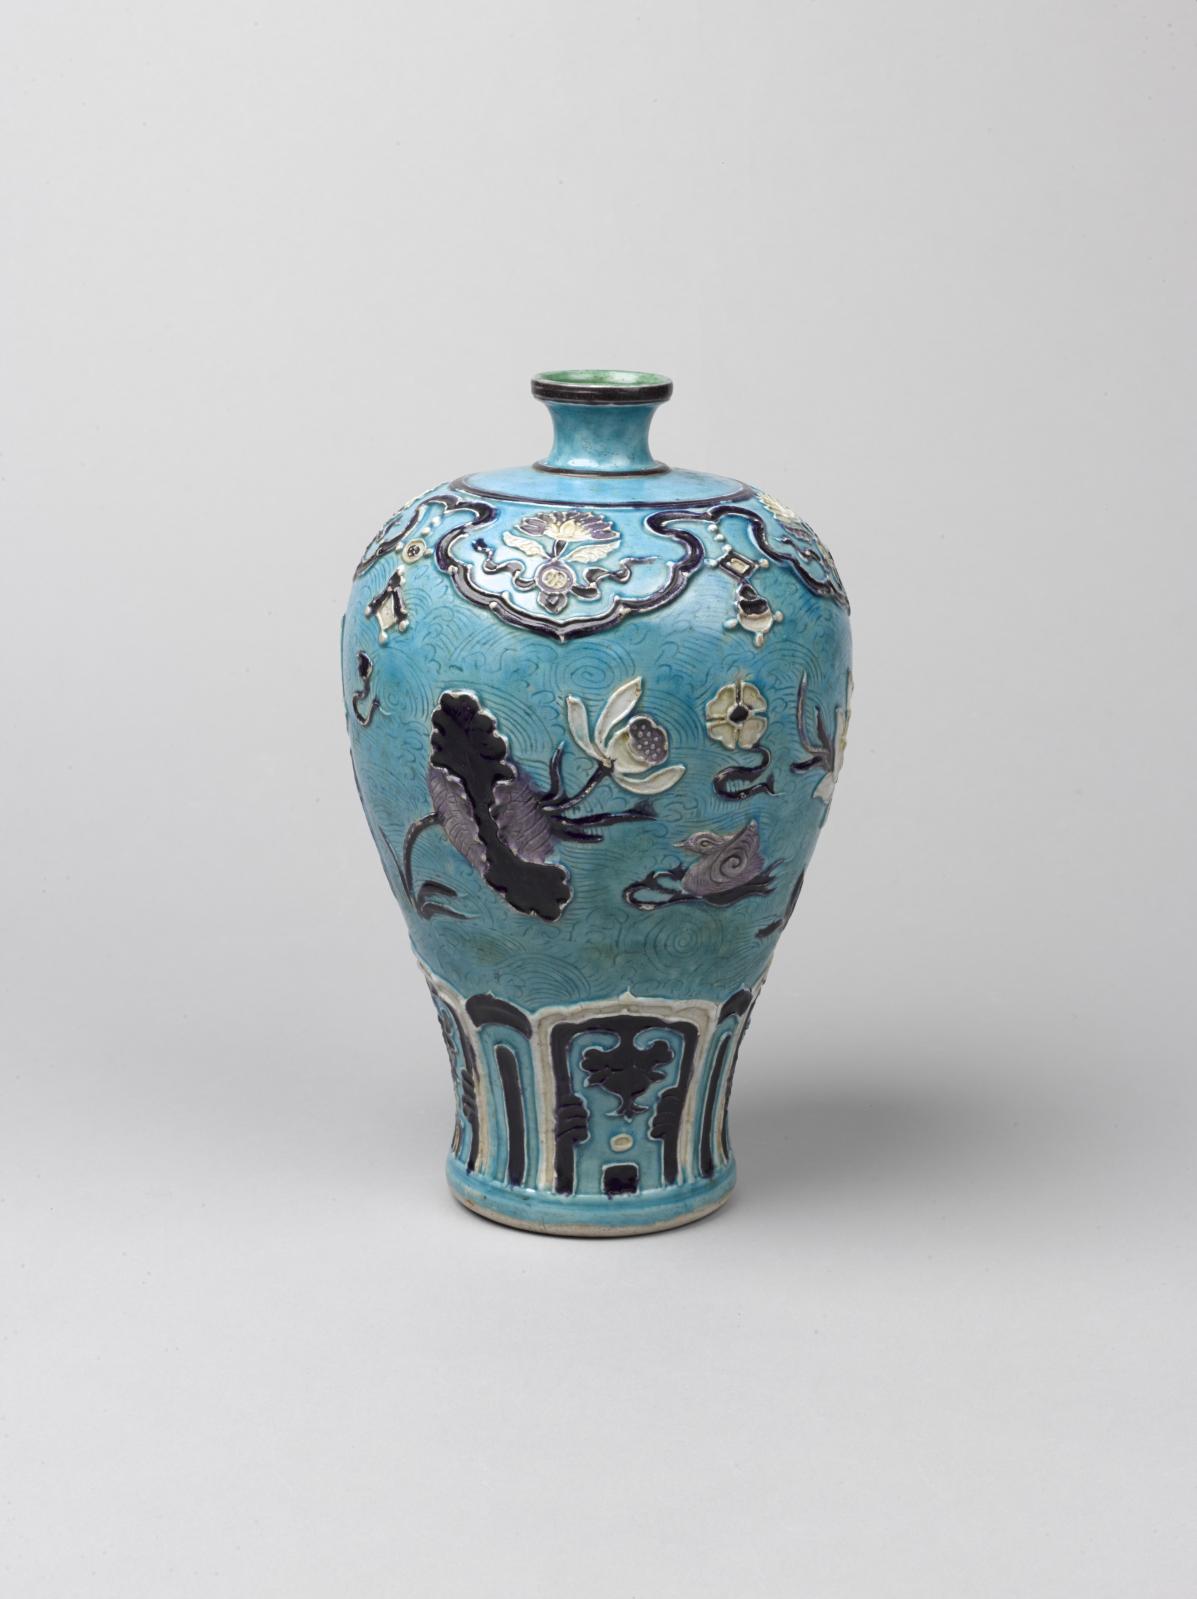 Dynastie Ming (XVe-XVIe siècle). Vase à motif d’oiseaux aquatiques sur un étang de lotus, glaçures fahua, fours de Jingdezhen, h. 27 cm, diam. 17.3 cm